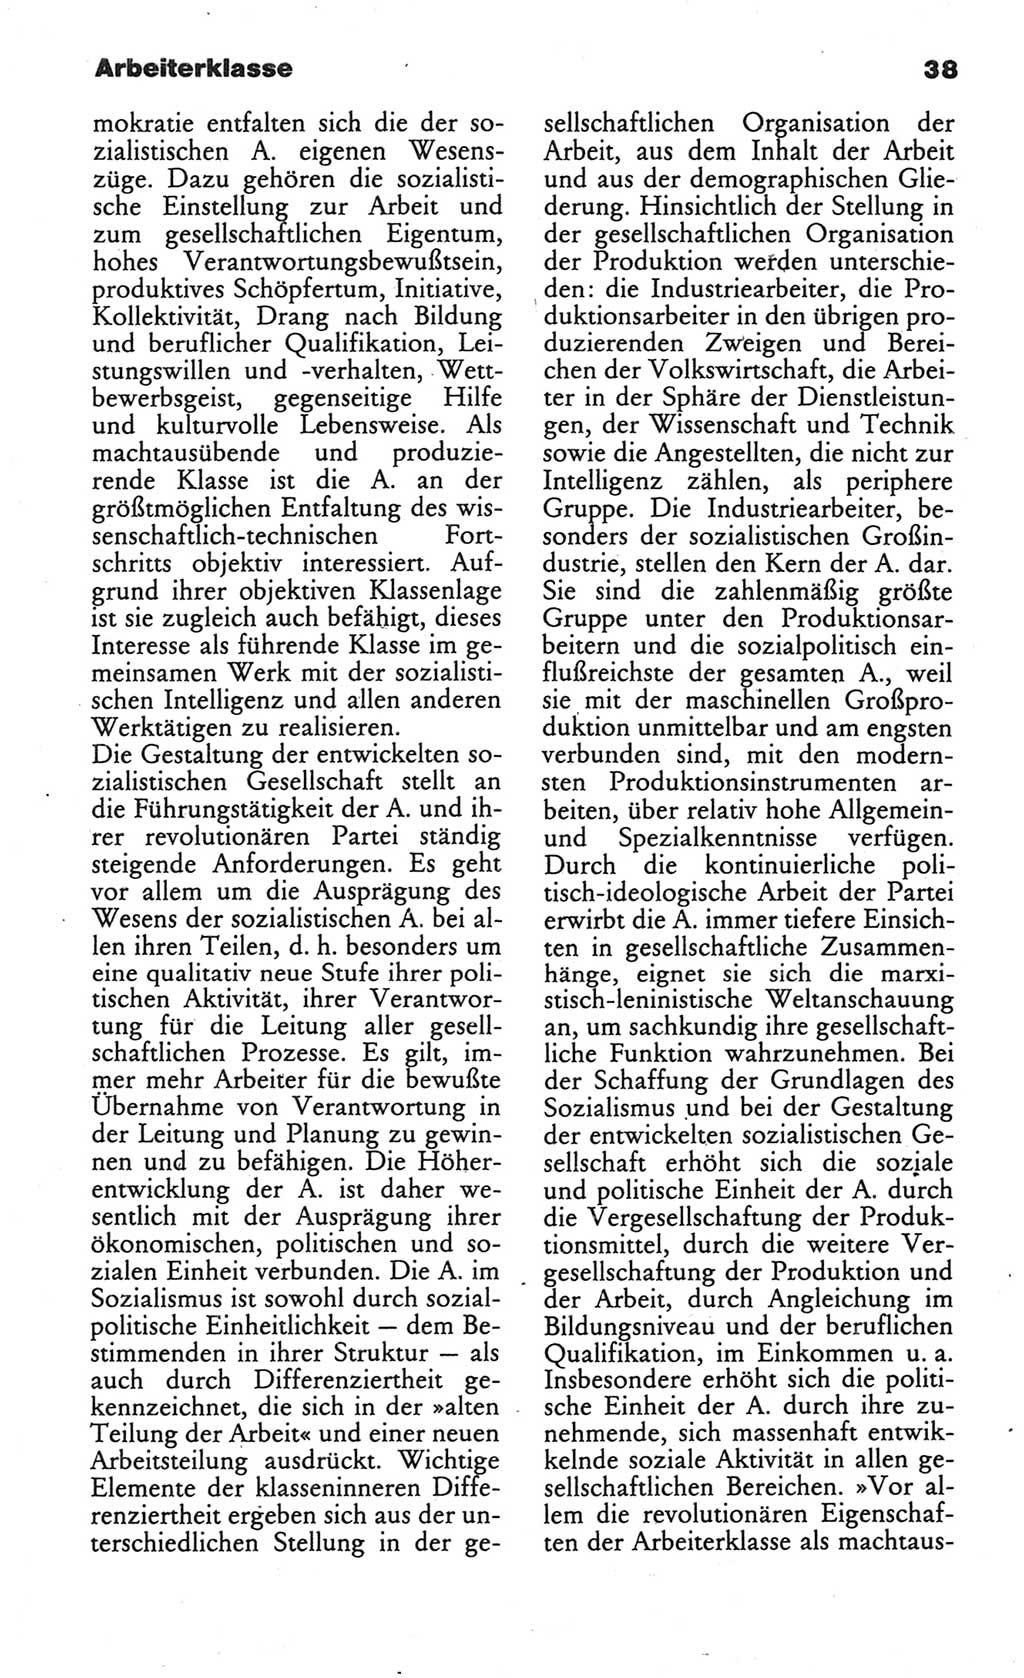 Wörterbuch des wissenschaftlichen Kommunismus [Deutsche Demokratische Republik (DDR)] 1984, Seite 38 (Wb. wiss. Komm. DDR 1984, S. 38)